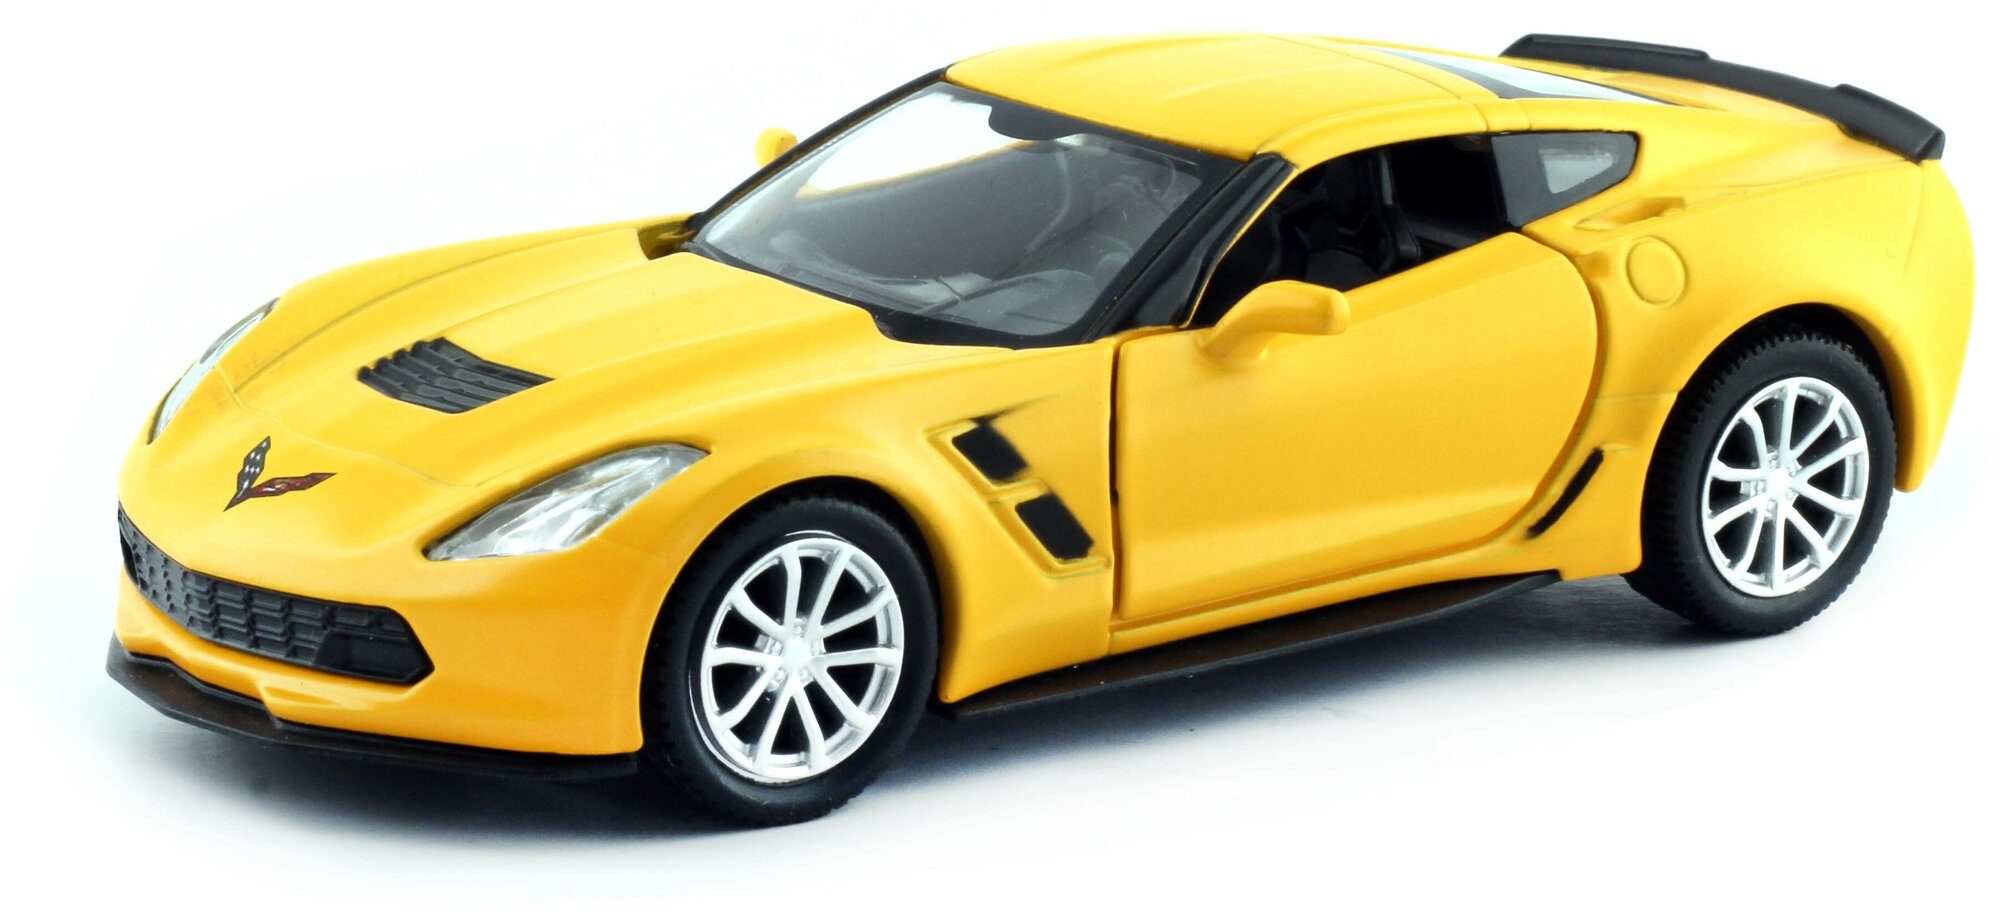 Машина металлическая RMZ City 1:32 Chevrolet Corvette Grand Sport, желтый матовый цвет, двери открываются